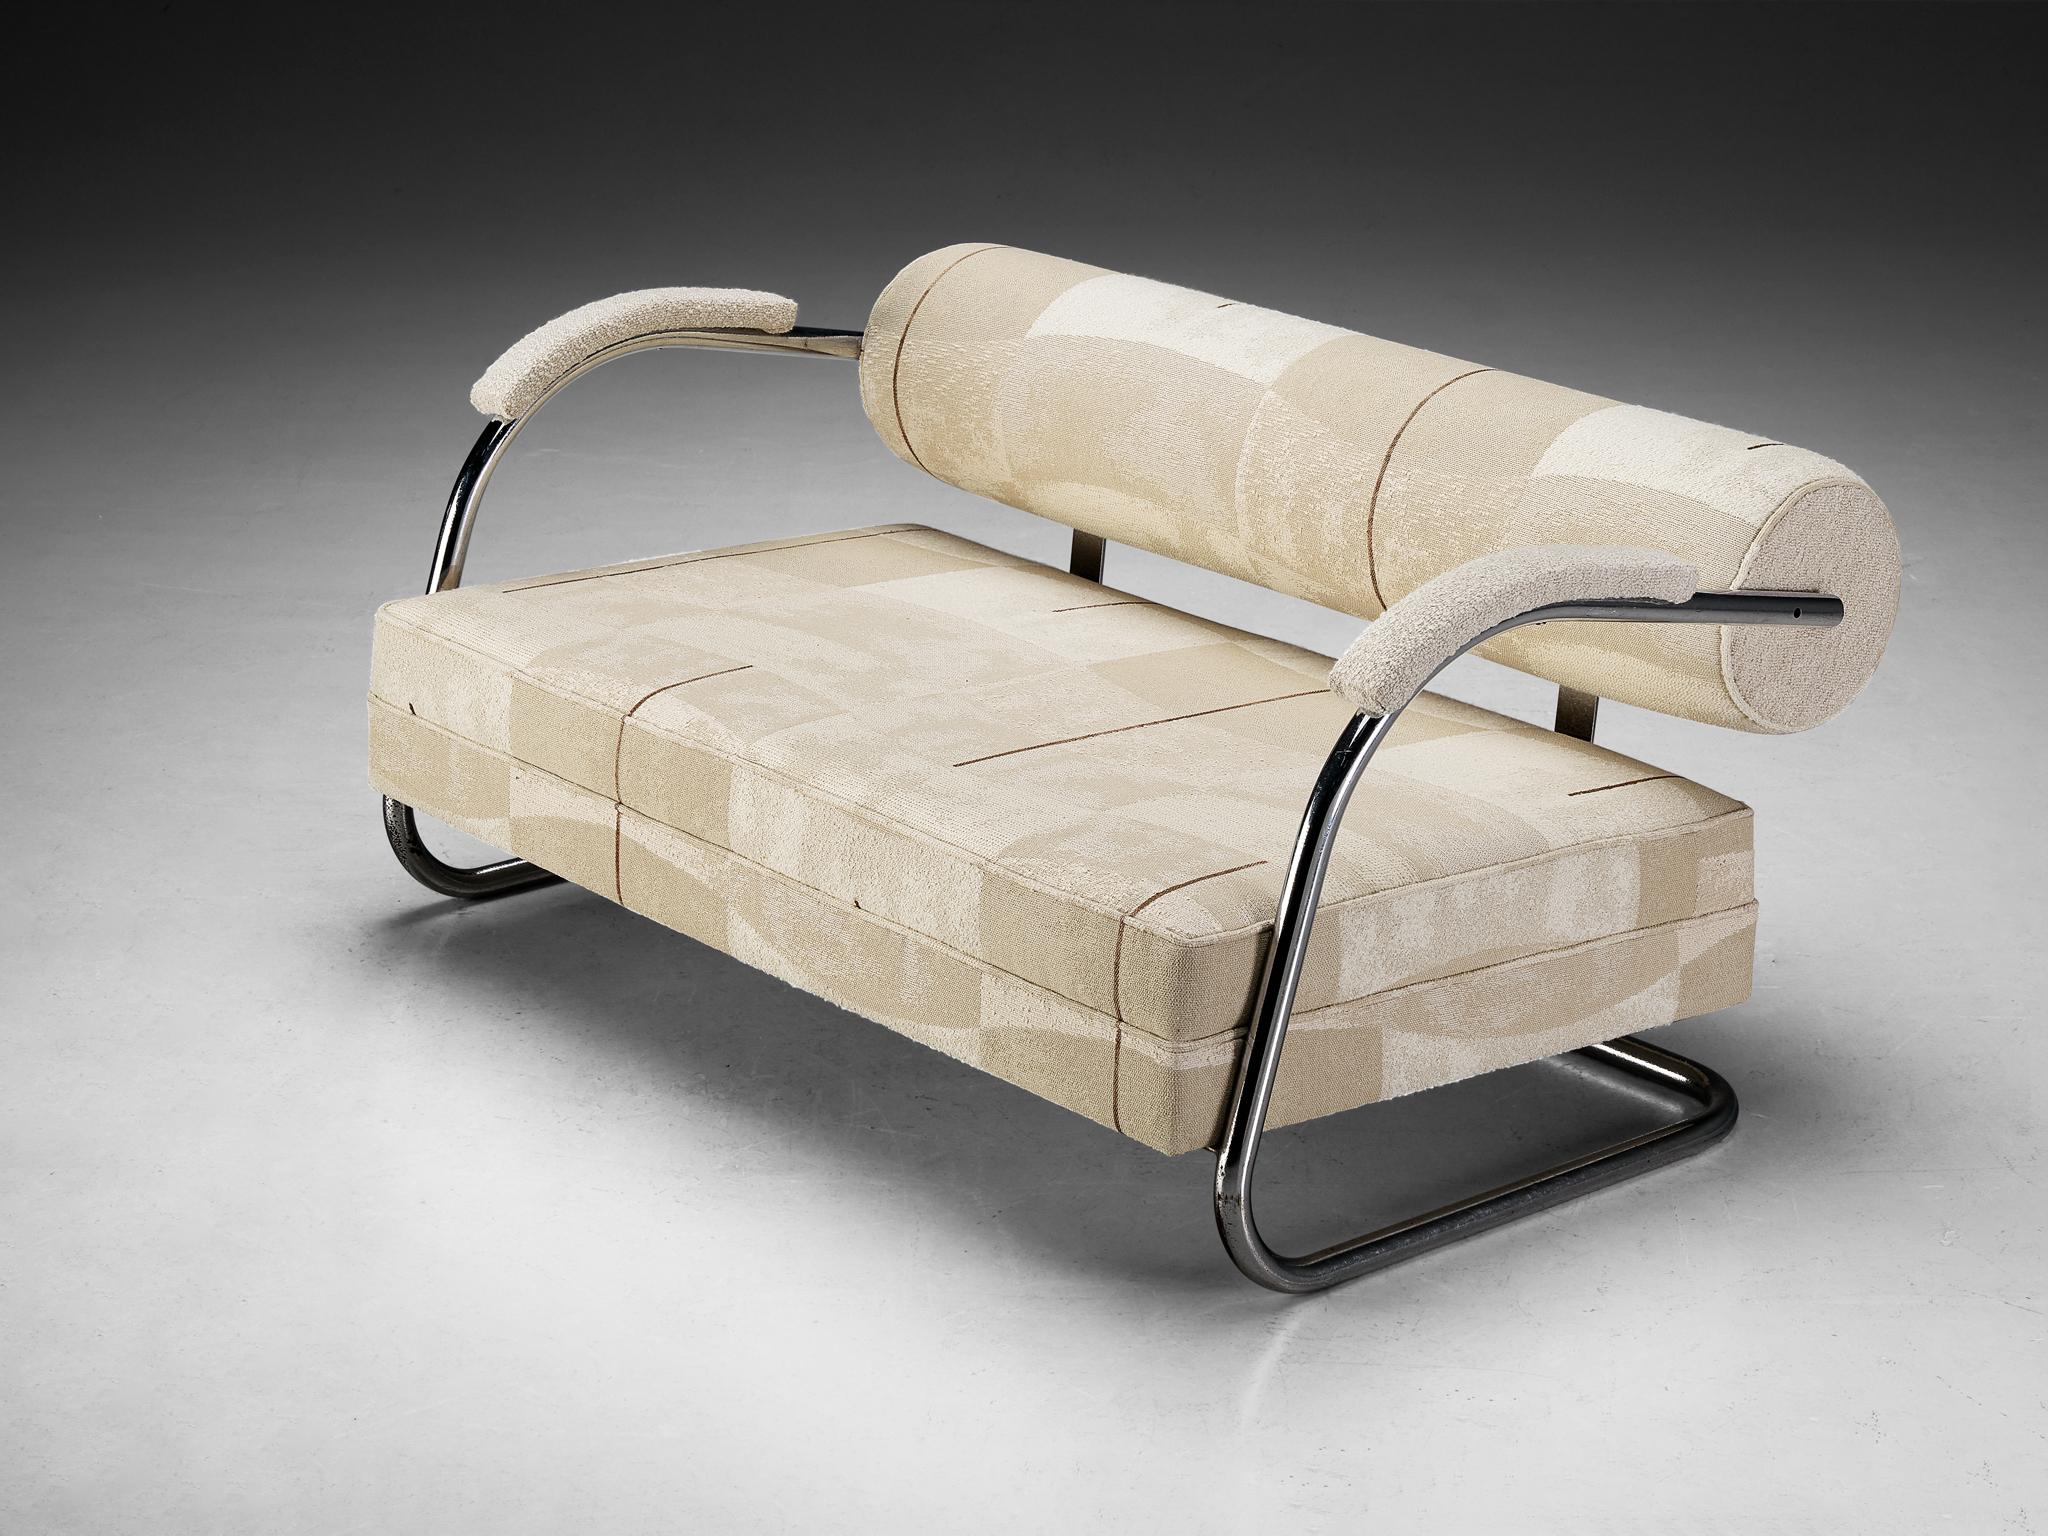 Canapé, tissu de Larsen, métal chromé, Europe du Nord, années 1930

Ce canapé est conçu selon les principes du mouvement Bauhaus. Le design présente un cadre tubulaire exécuté en métal chromé et se caractérise par des lignes frappantes et des bords